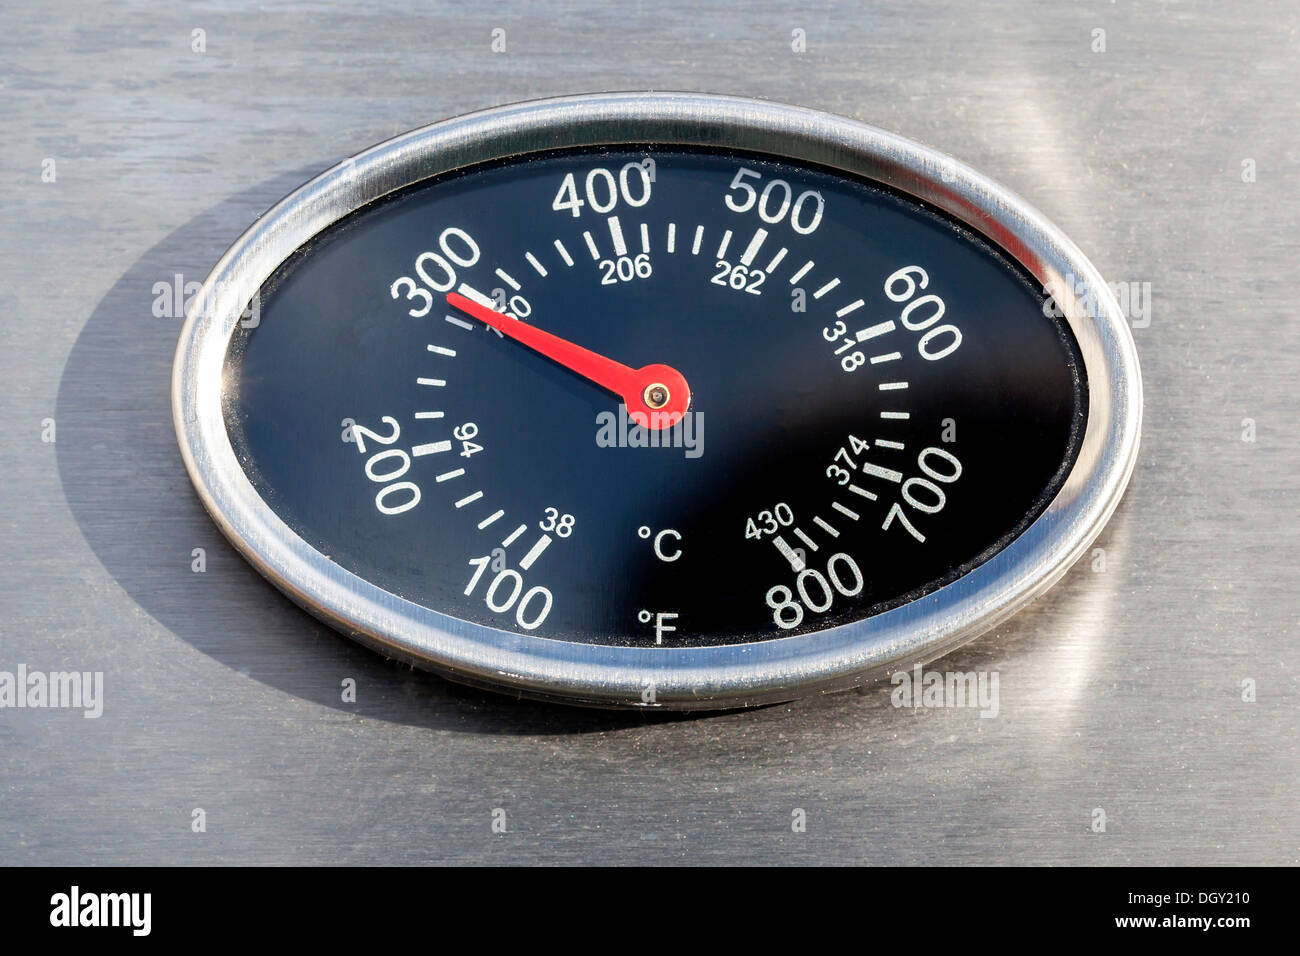 Termometro, visualizzazione della temperatura in gradi Fahrenheit e Celsius o Centigradi, su un grill a gas, Germania Foto Stock